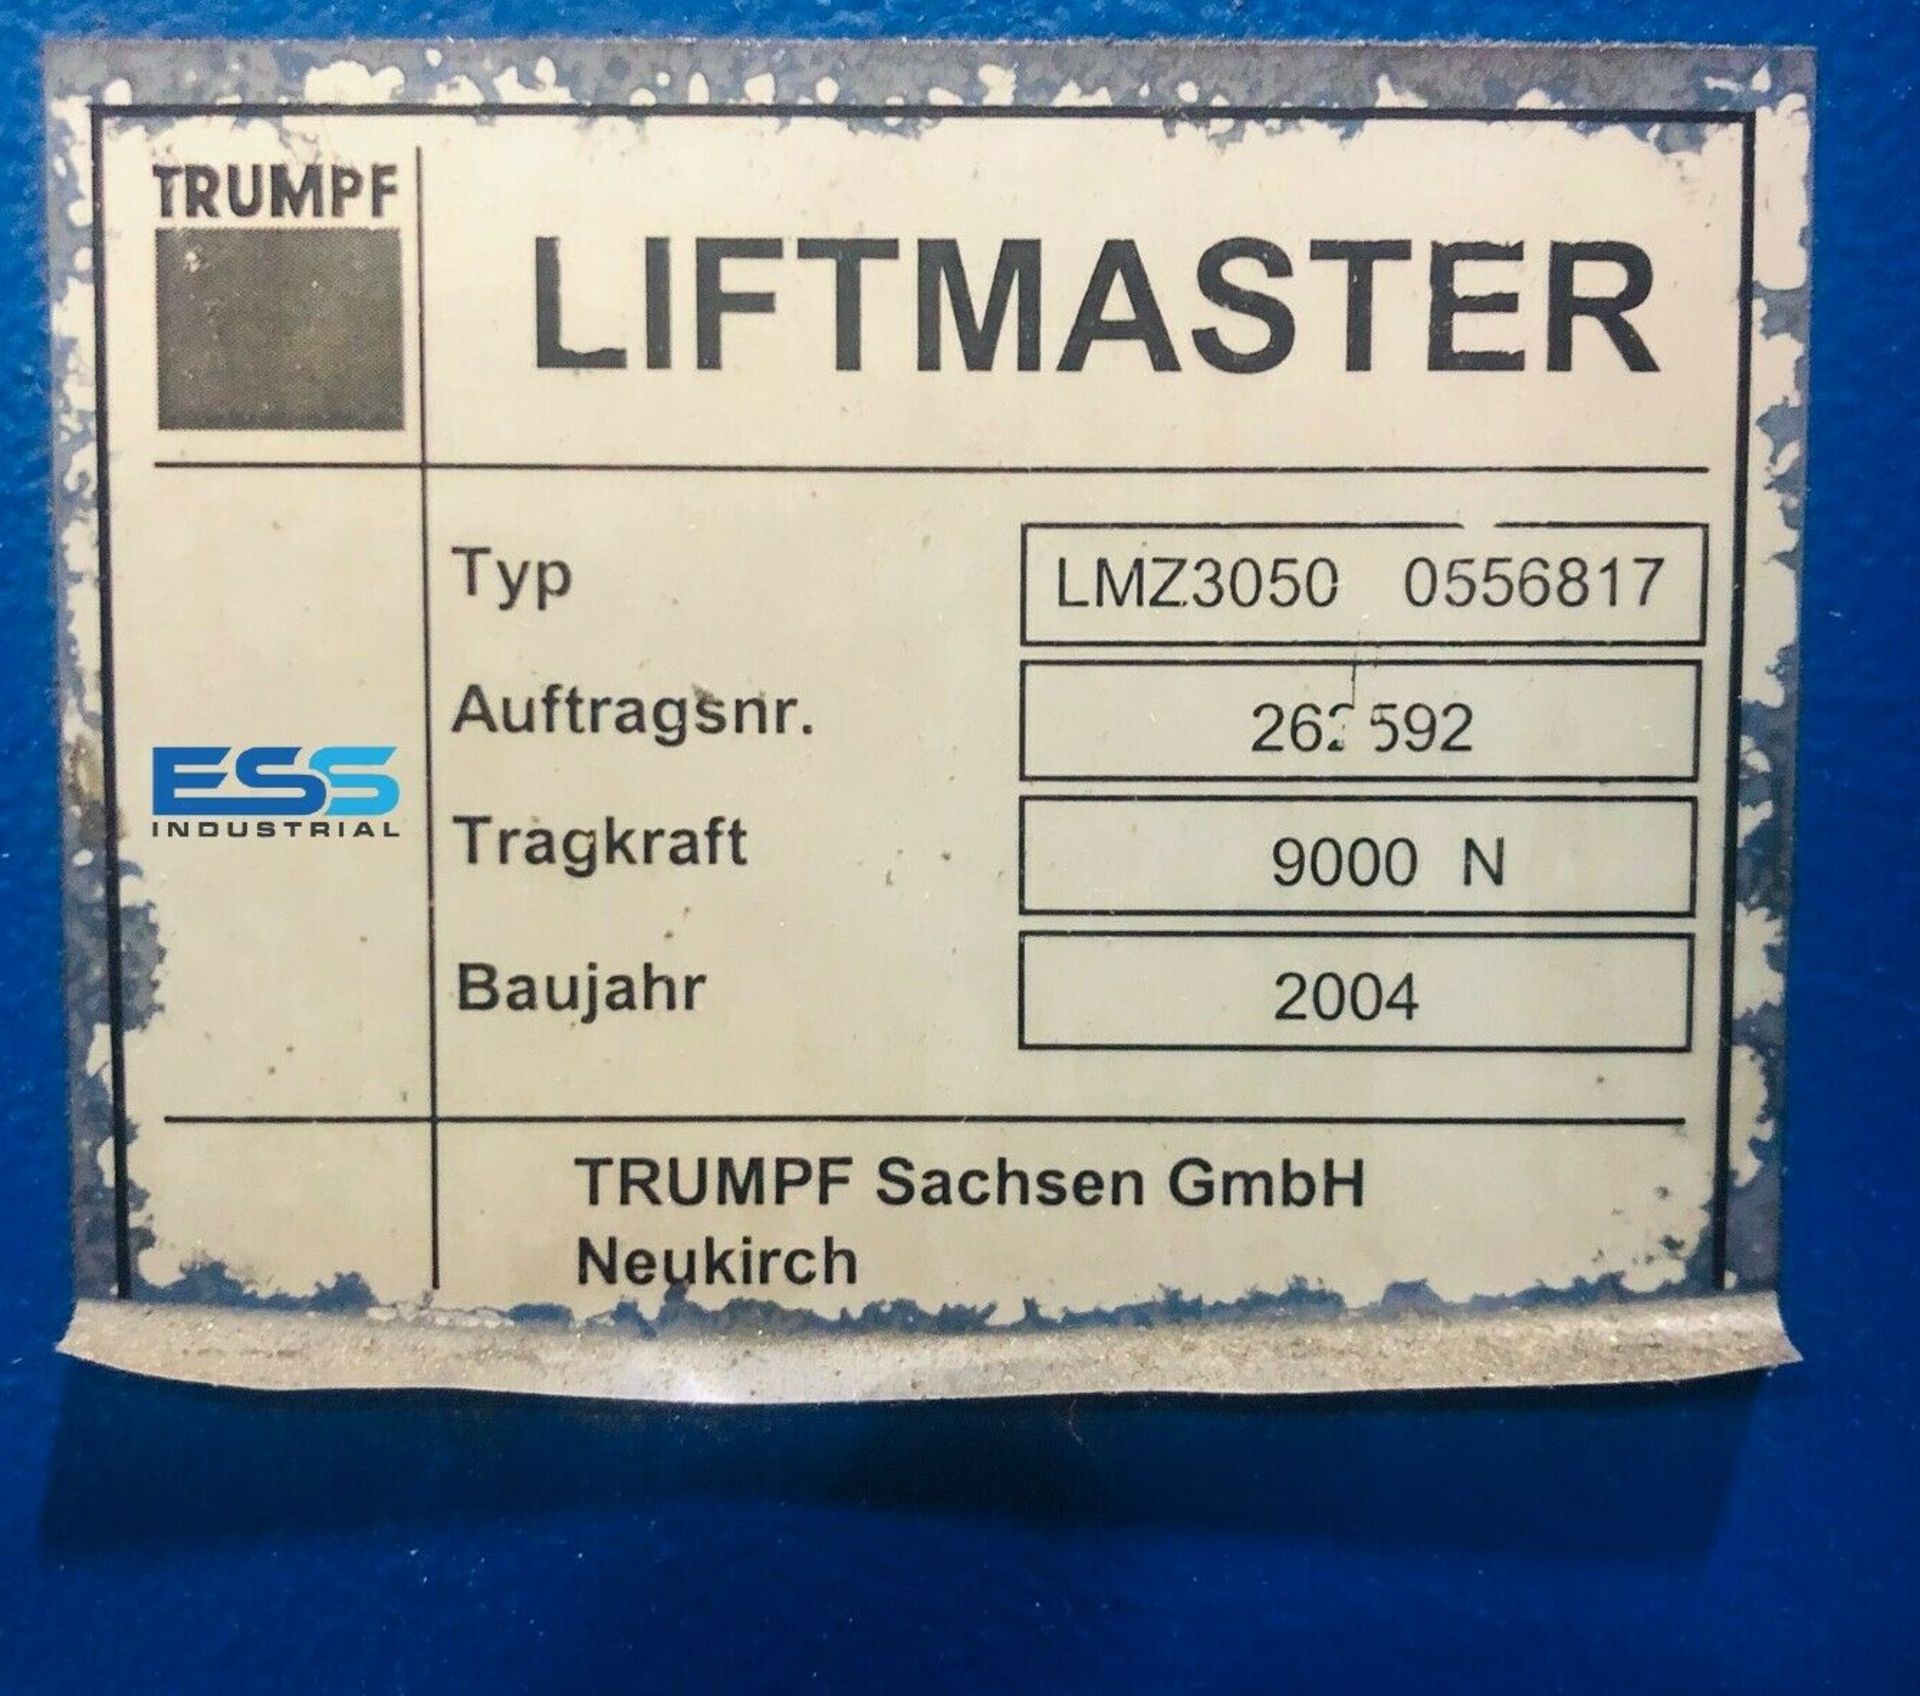 TRUMPF LIFTMASTER LMZ-3050 AUTOMATIC SHEET LOADER - Image 4 of 4